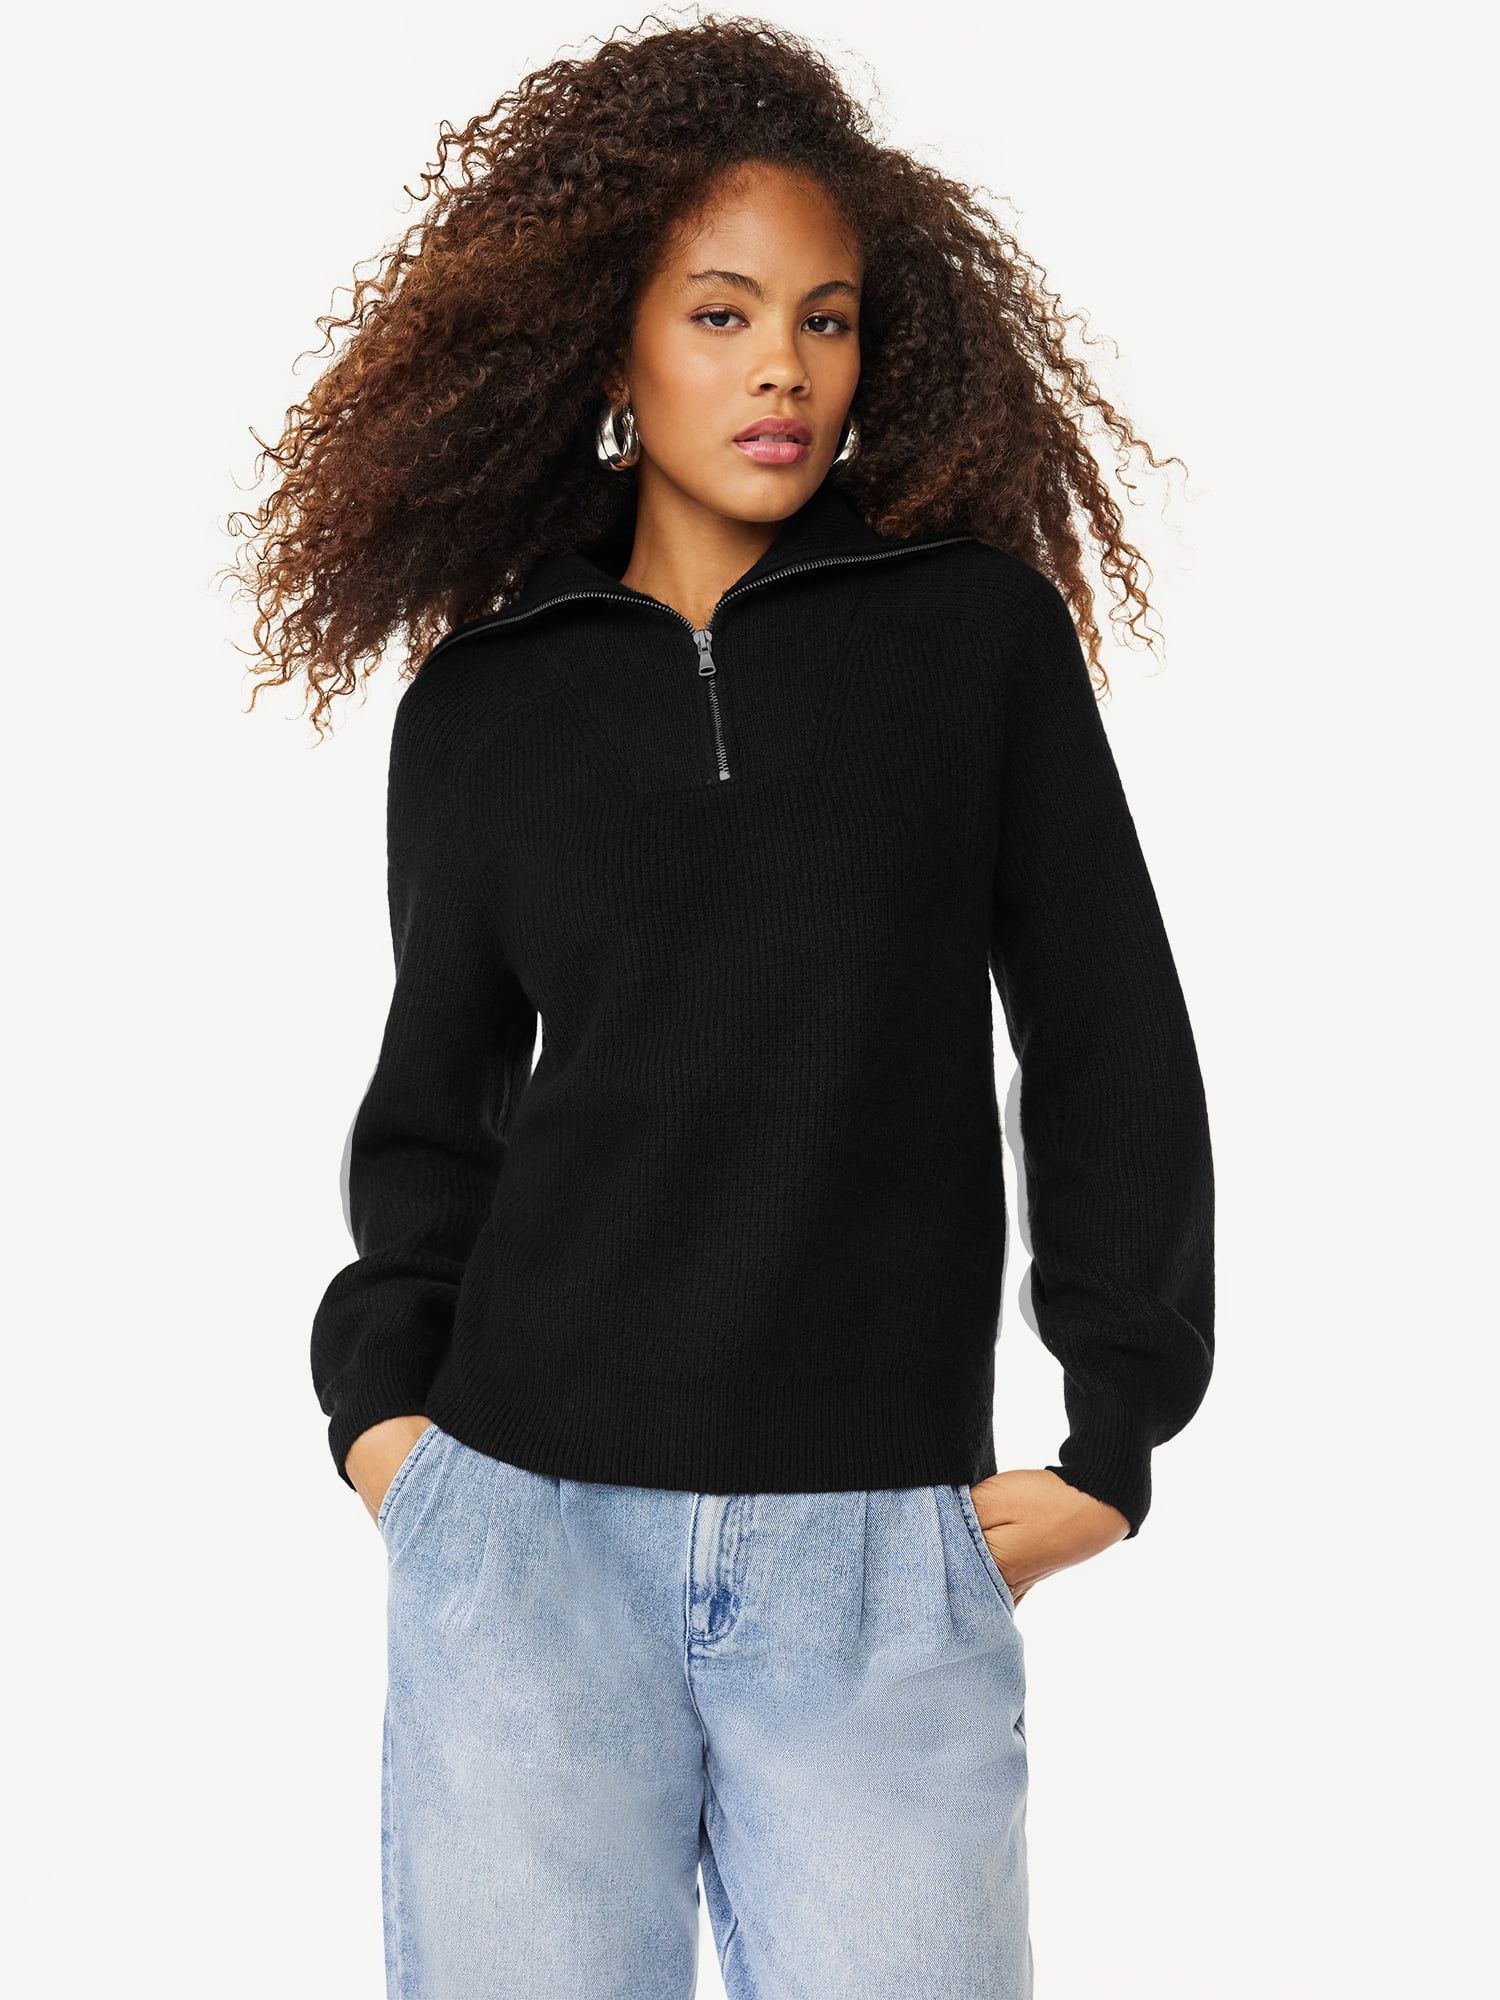 Scoop Women's Half Zip Sweater with Long Sleeves, Sizes XS-XXL | Walmart (US)